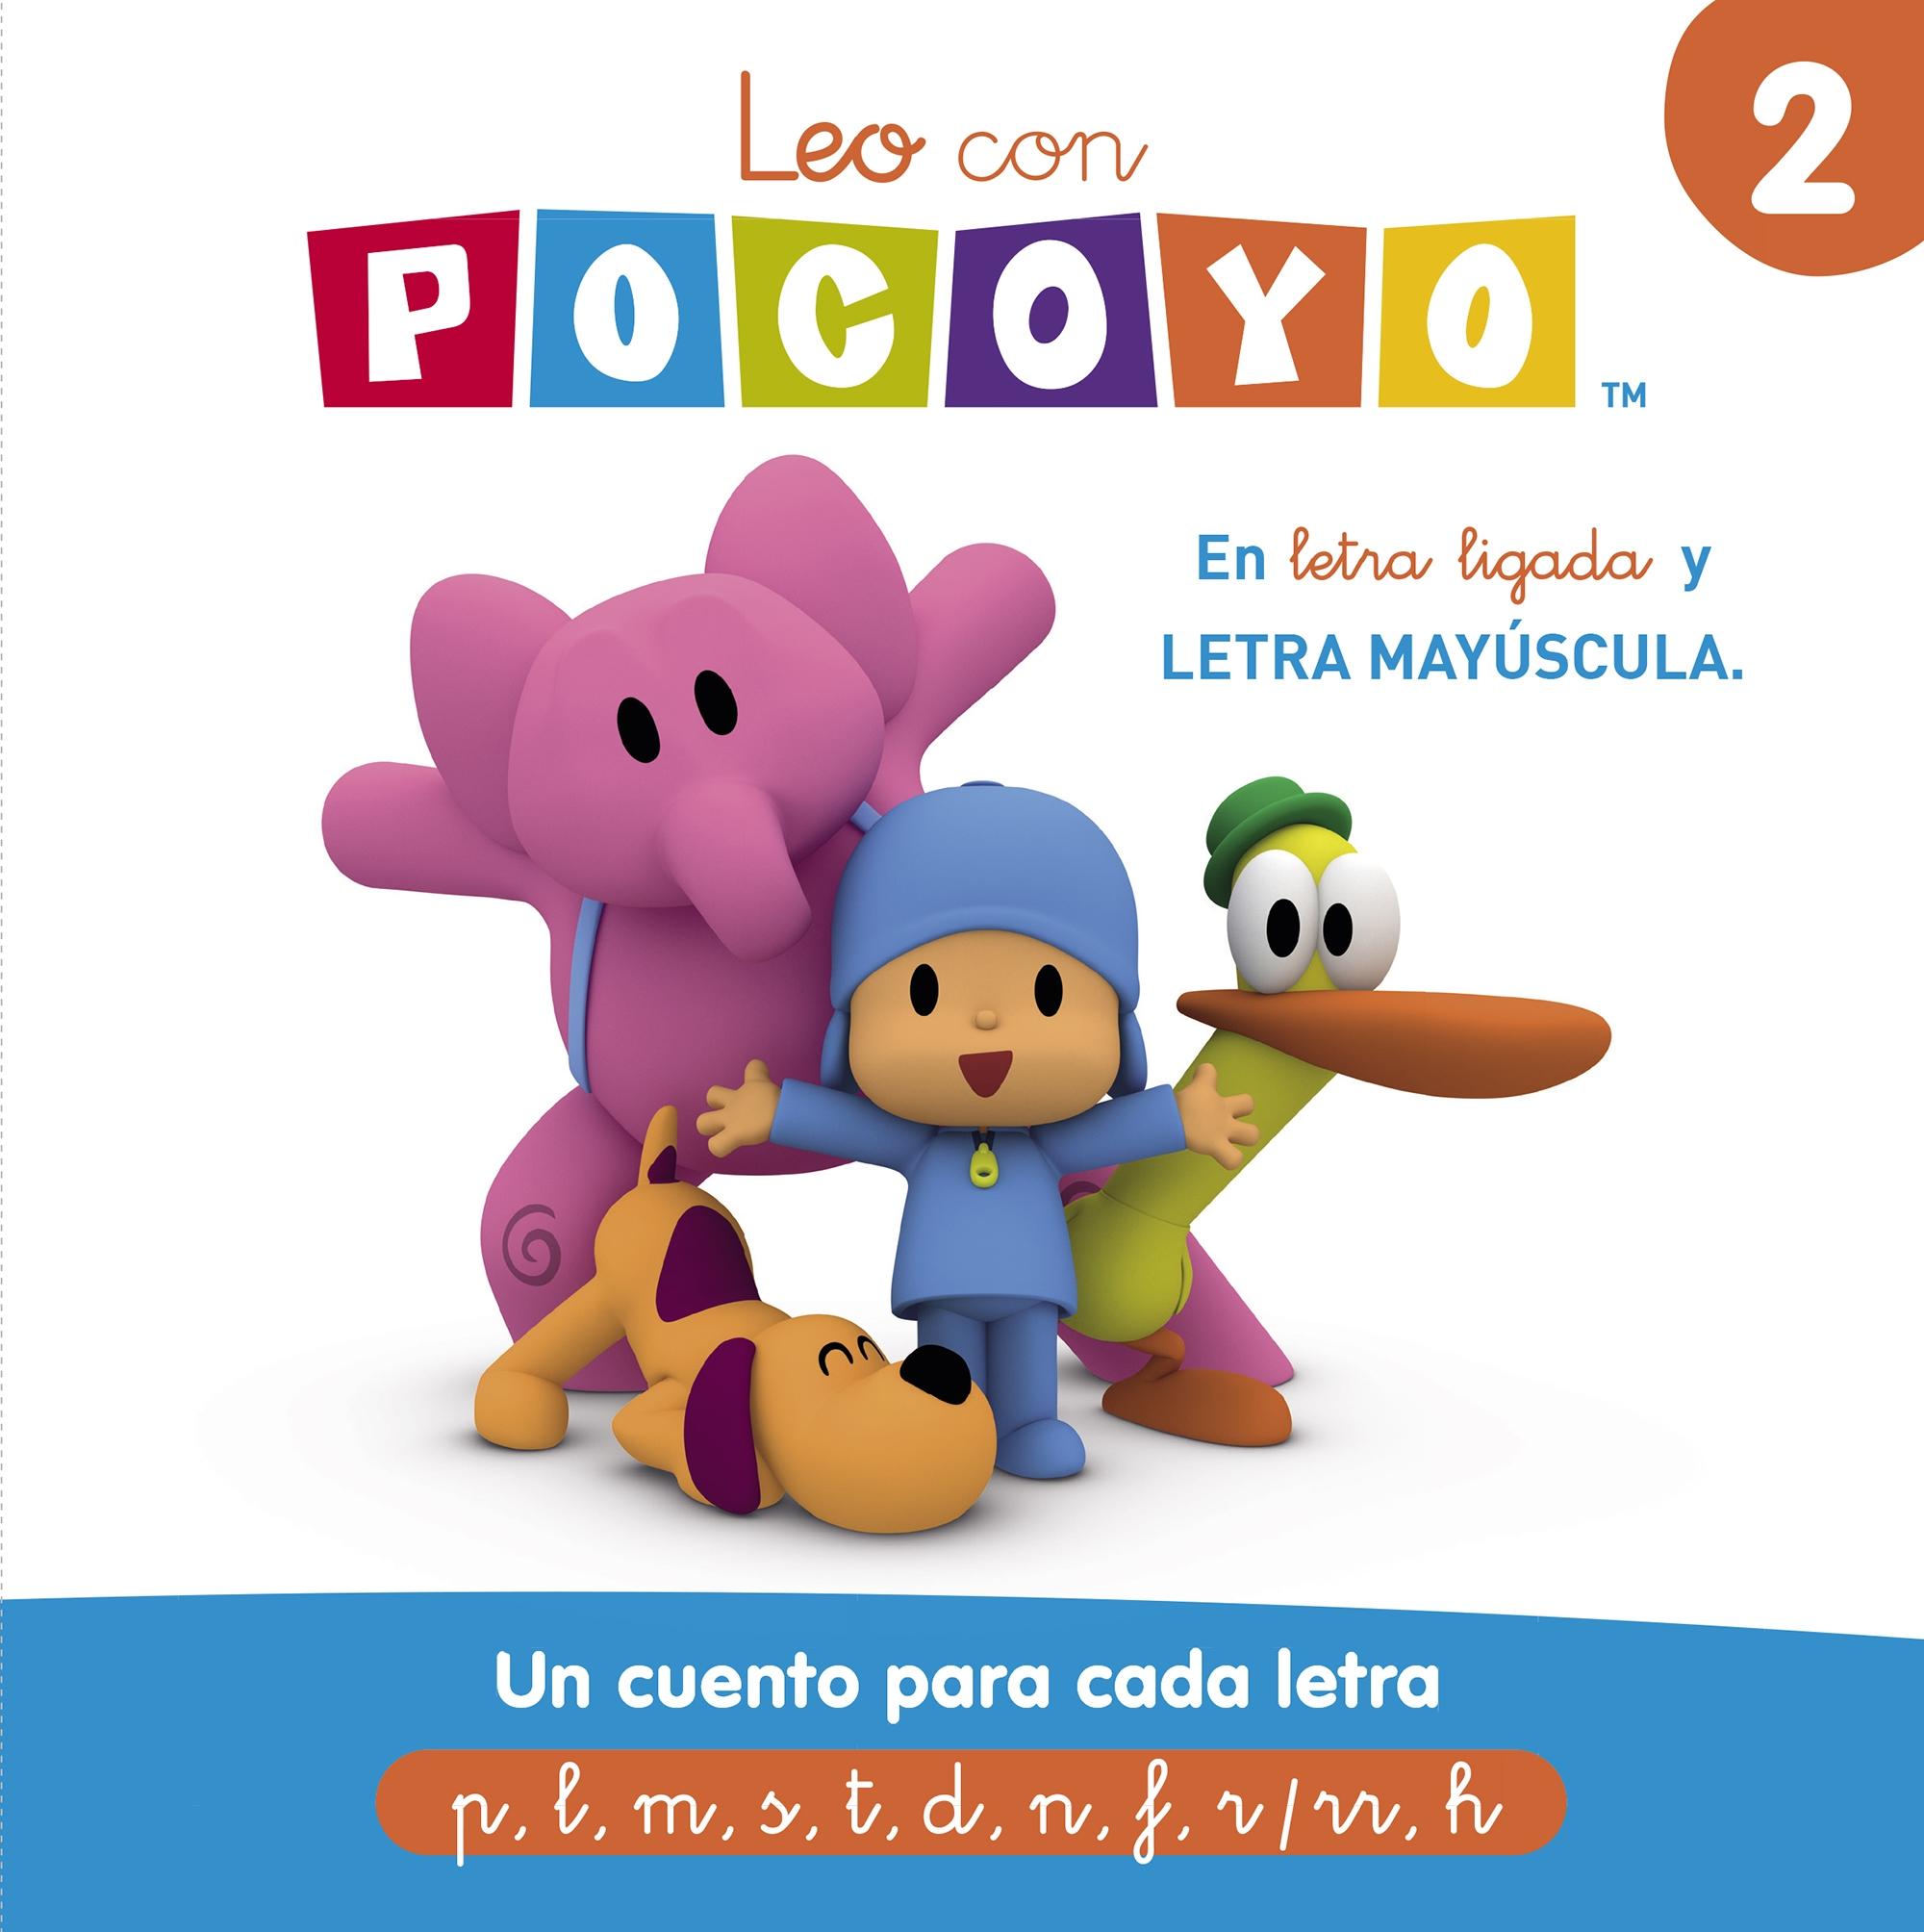 Leo con Pocoyó 2: un Cuento para Cada Letra (P, L, M, S, T, D, N, F, R/Rr, H) "Letra Ligada y Meyúscula"